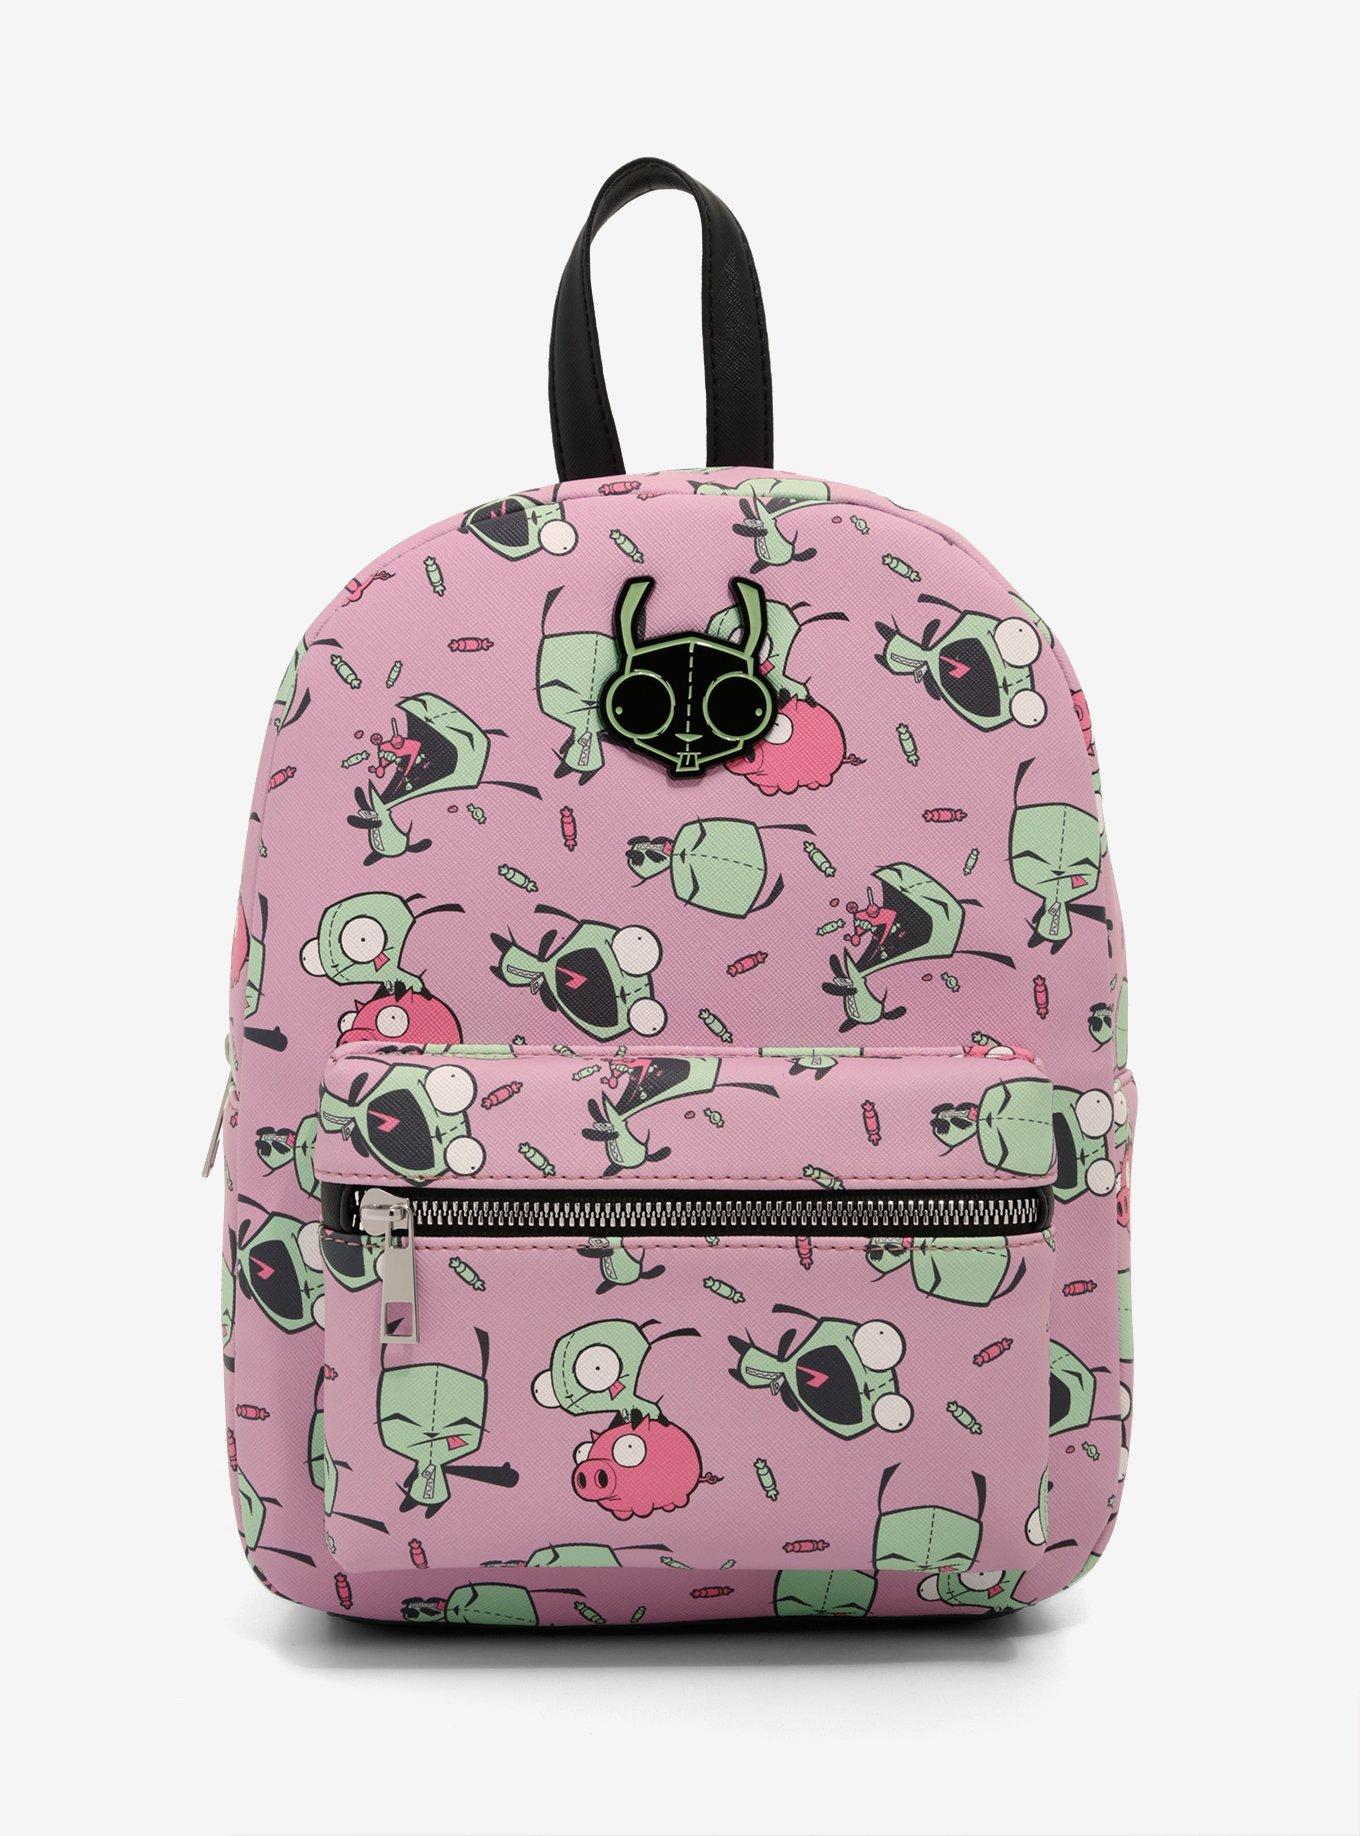 Invader Zim GIR & Pig Mini Backpack, , hi-res